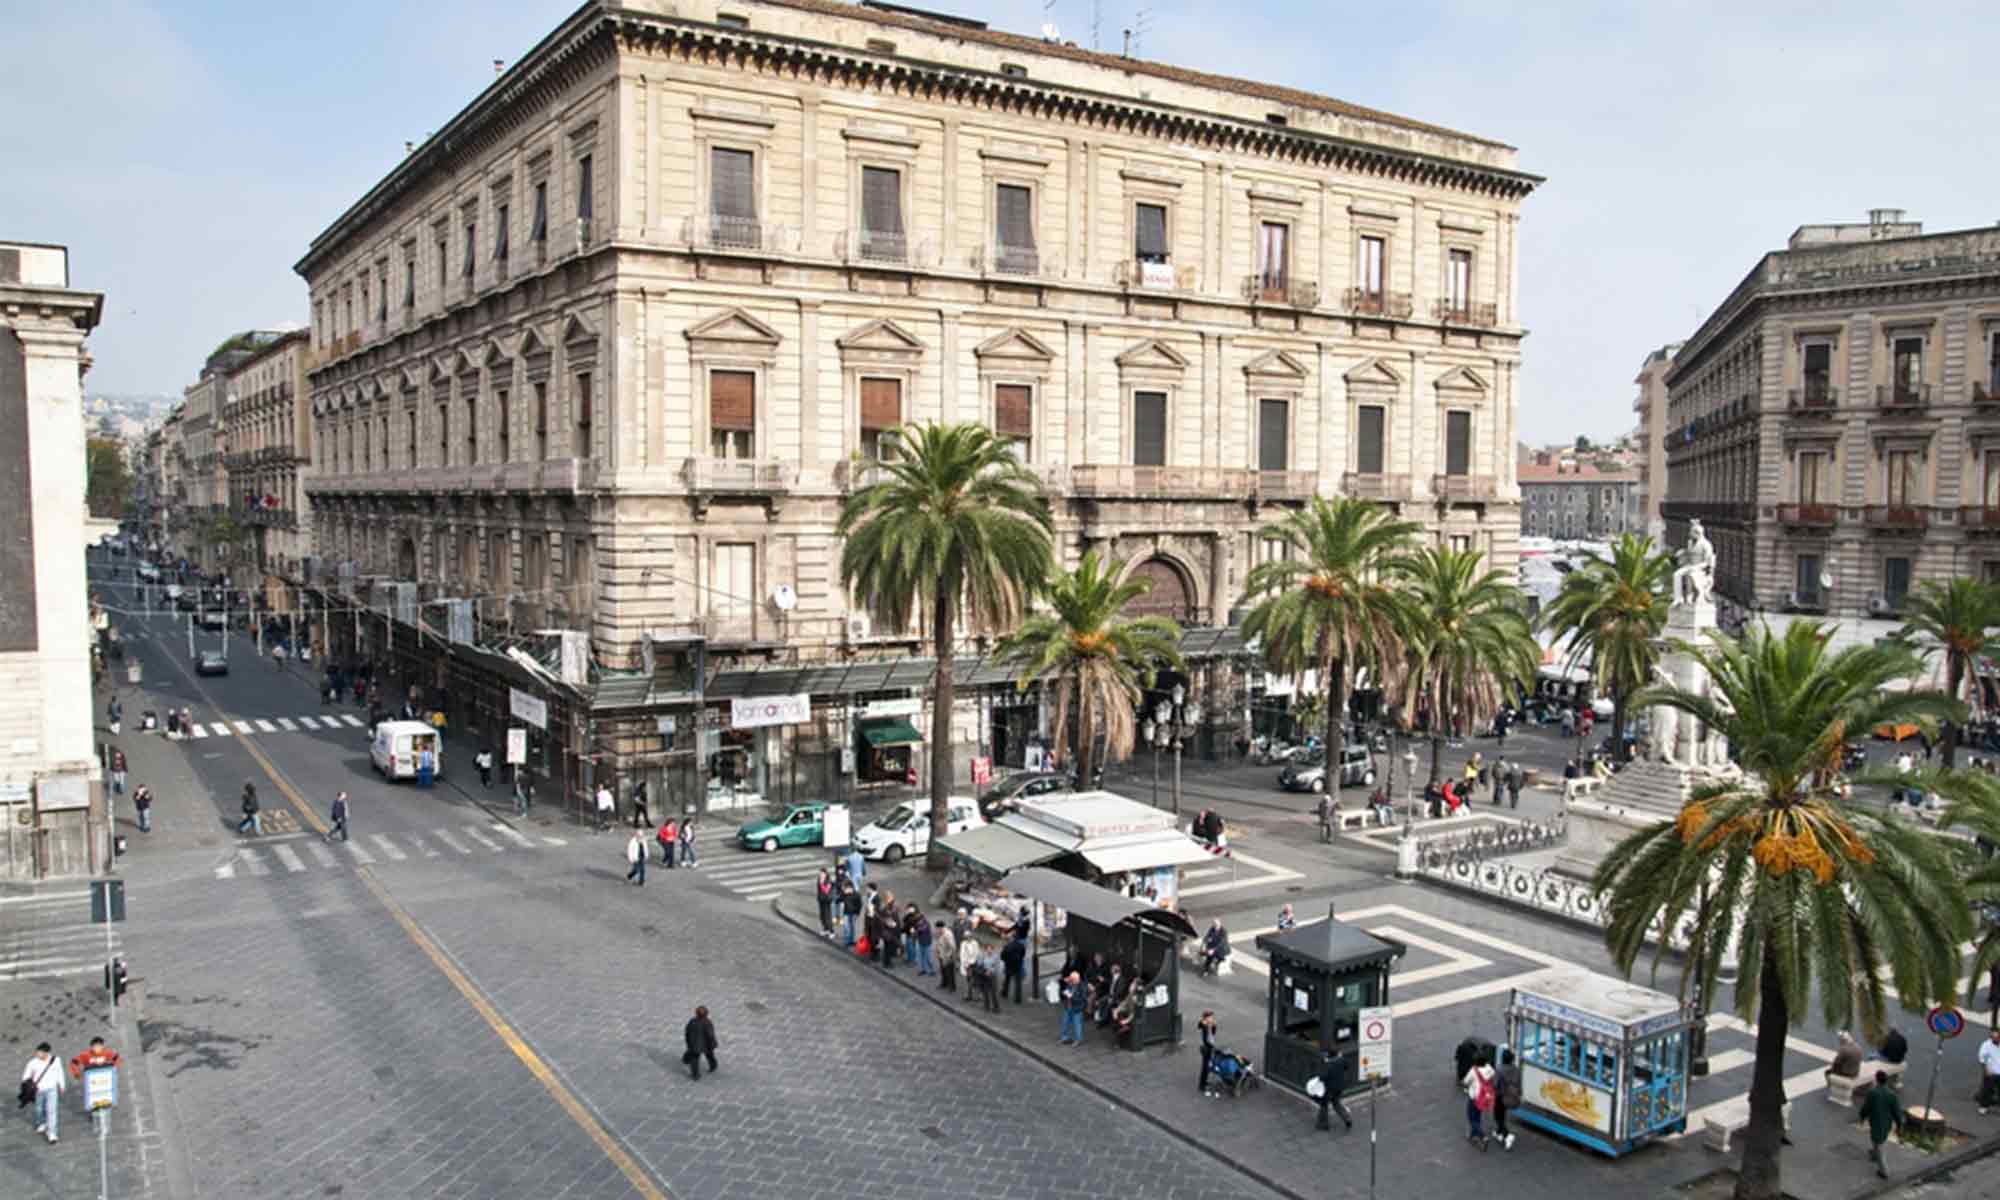 Catania, il perché di alcuni nomi di vie famose